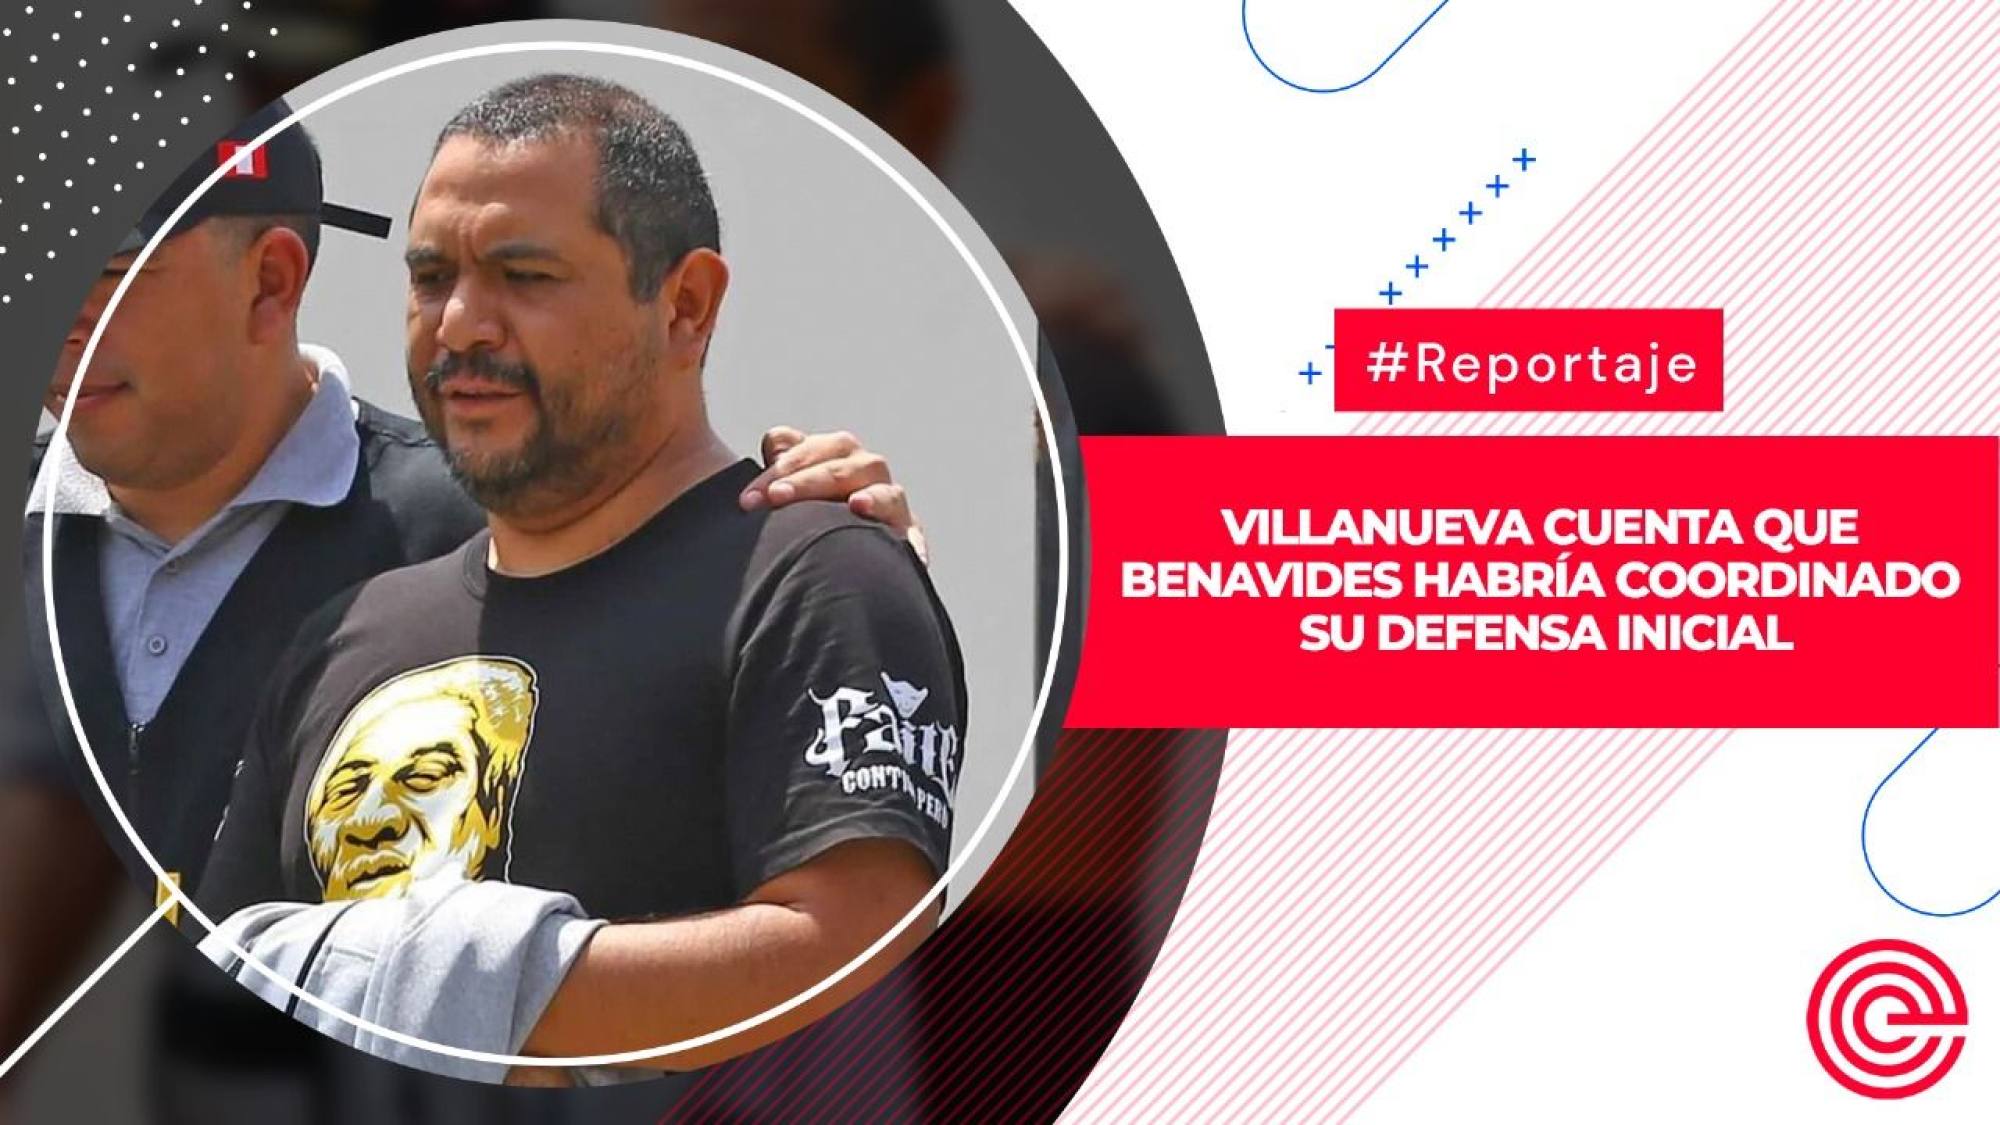 Villanueva cuenta que Benavides habría coordinado su defensa inicial, Epicentro TV